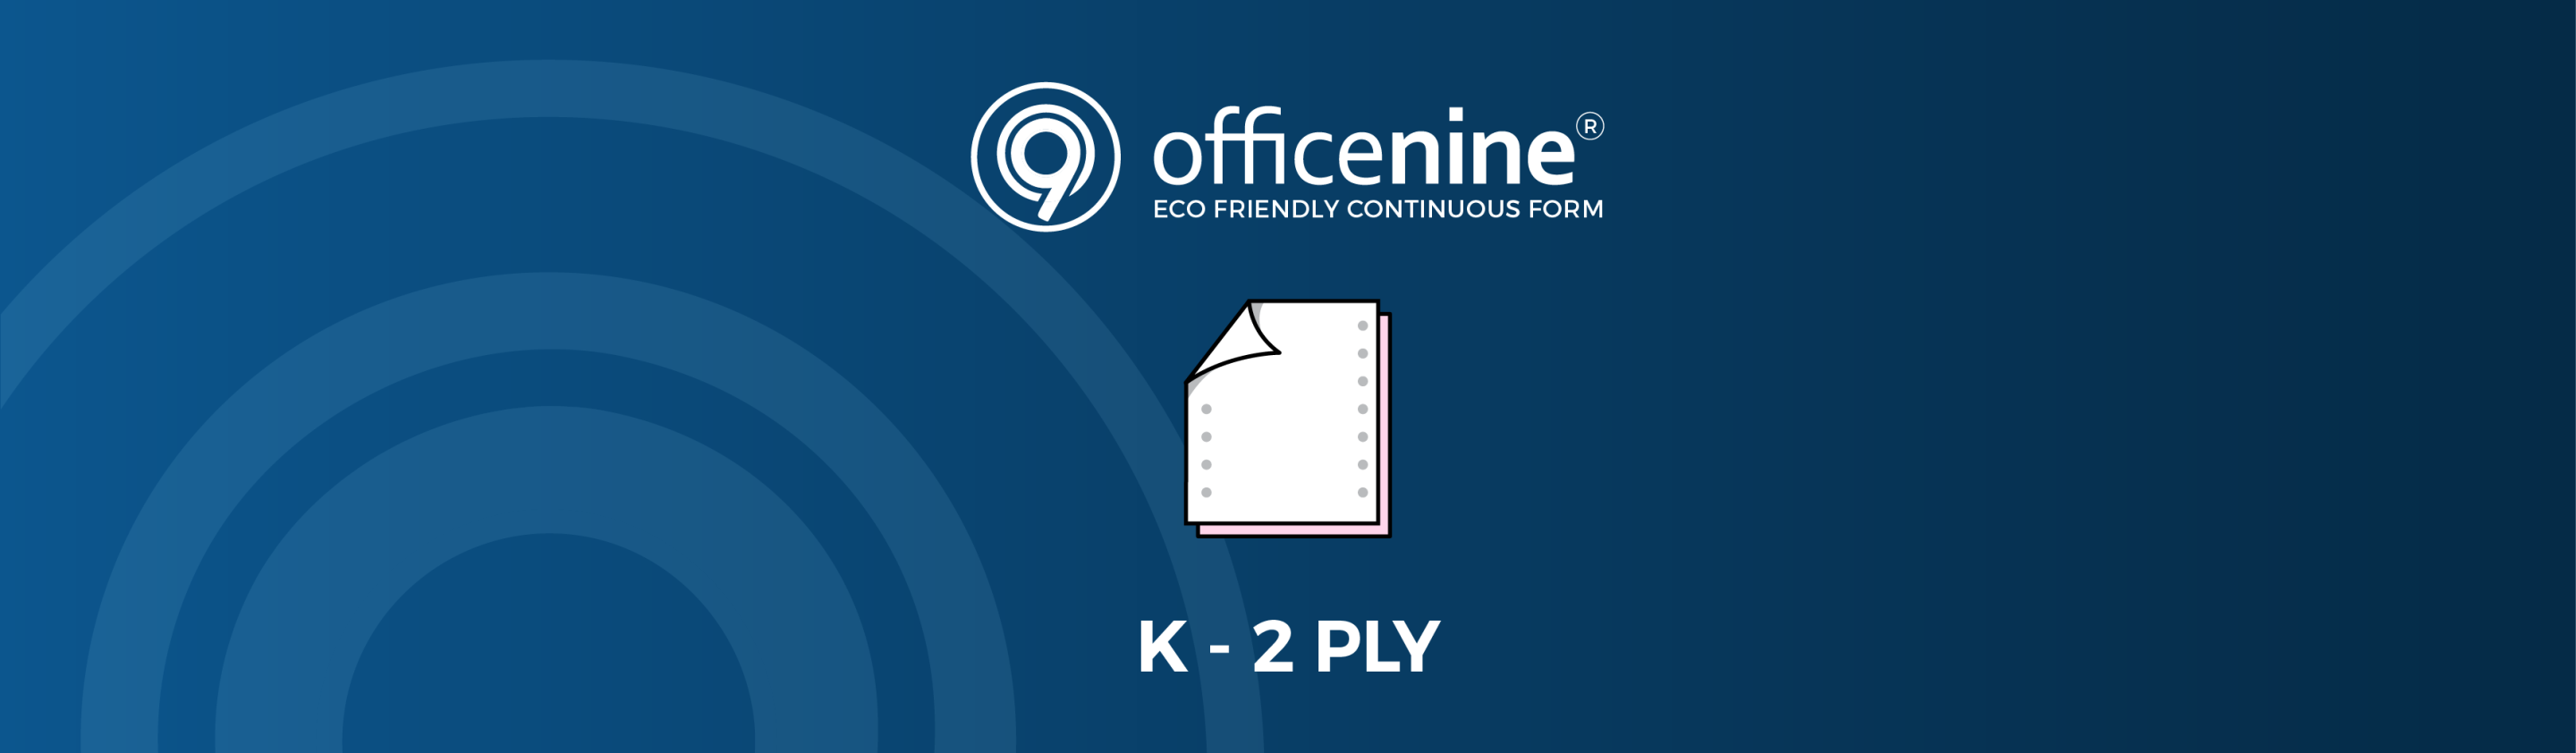 K-2-PLY Officenine